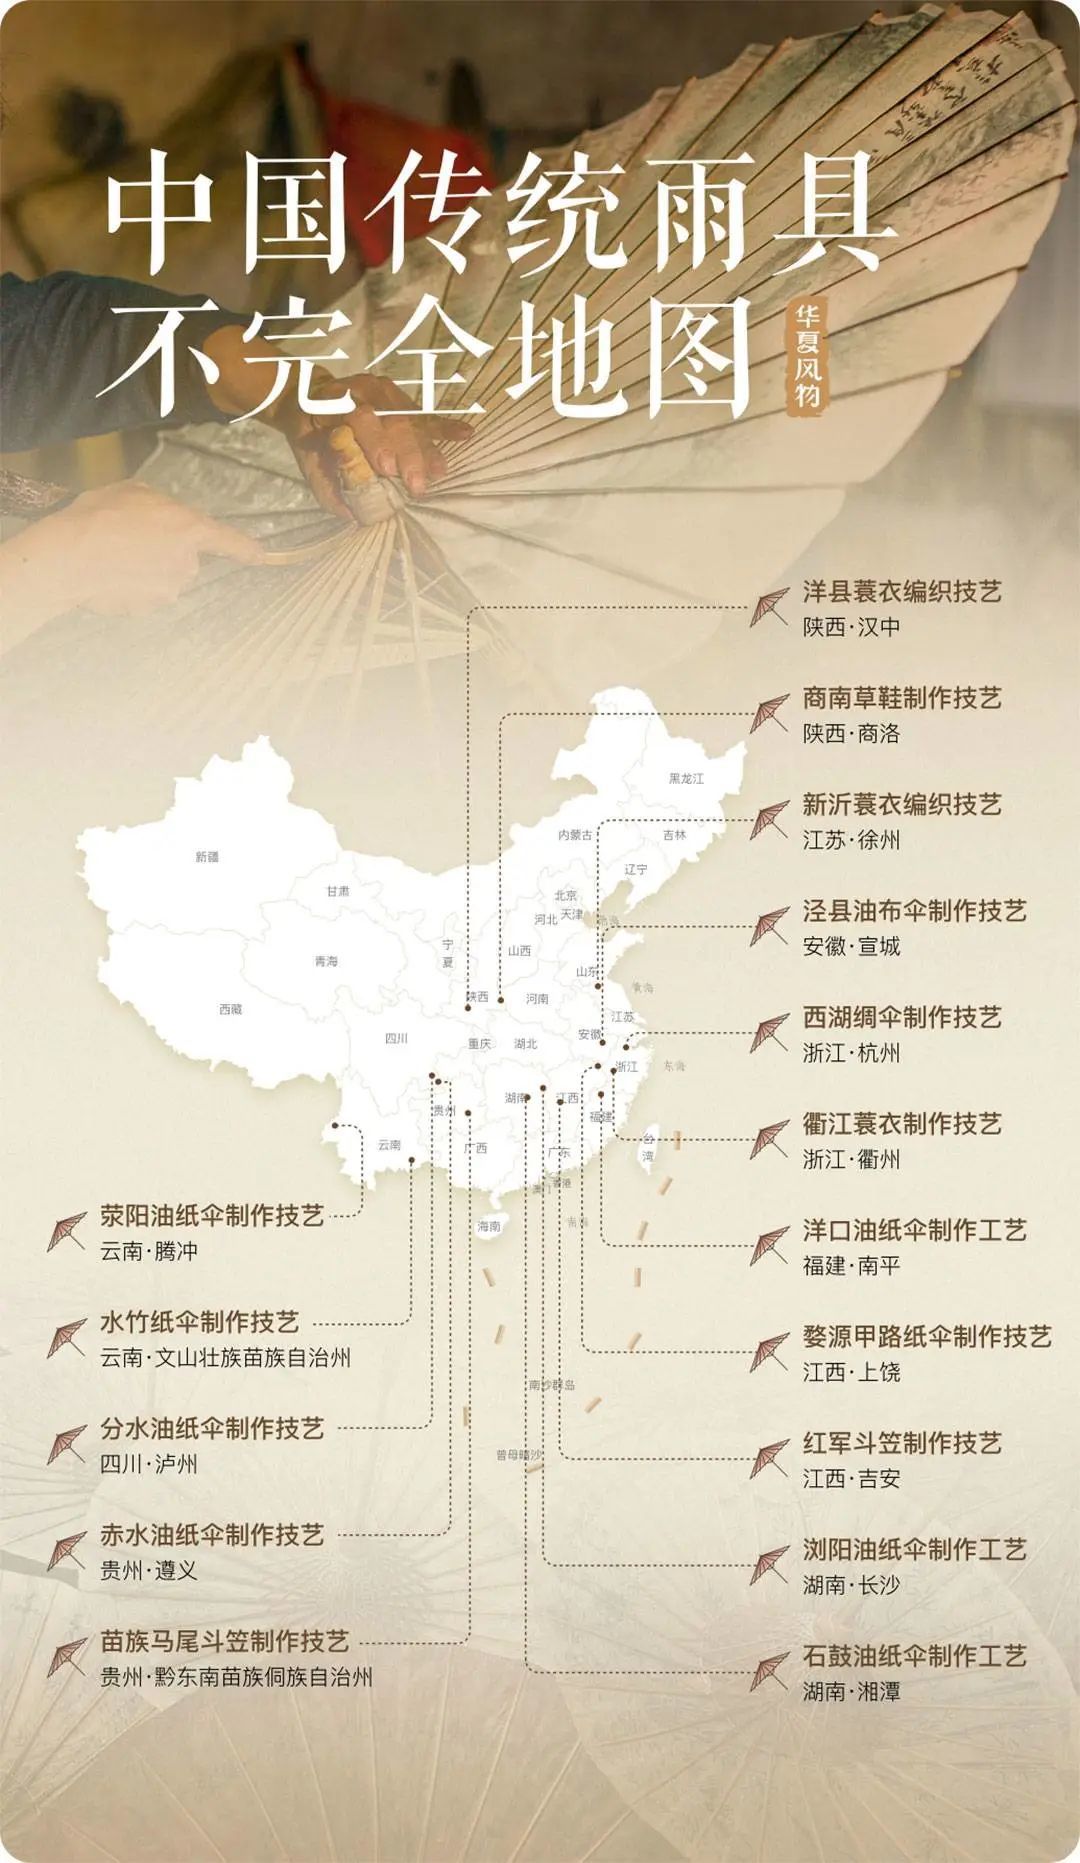 中国传统雨具不完全地图 ©图虫创意